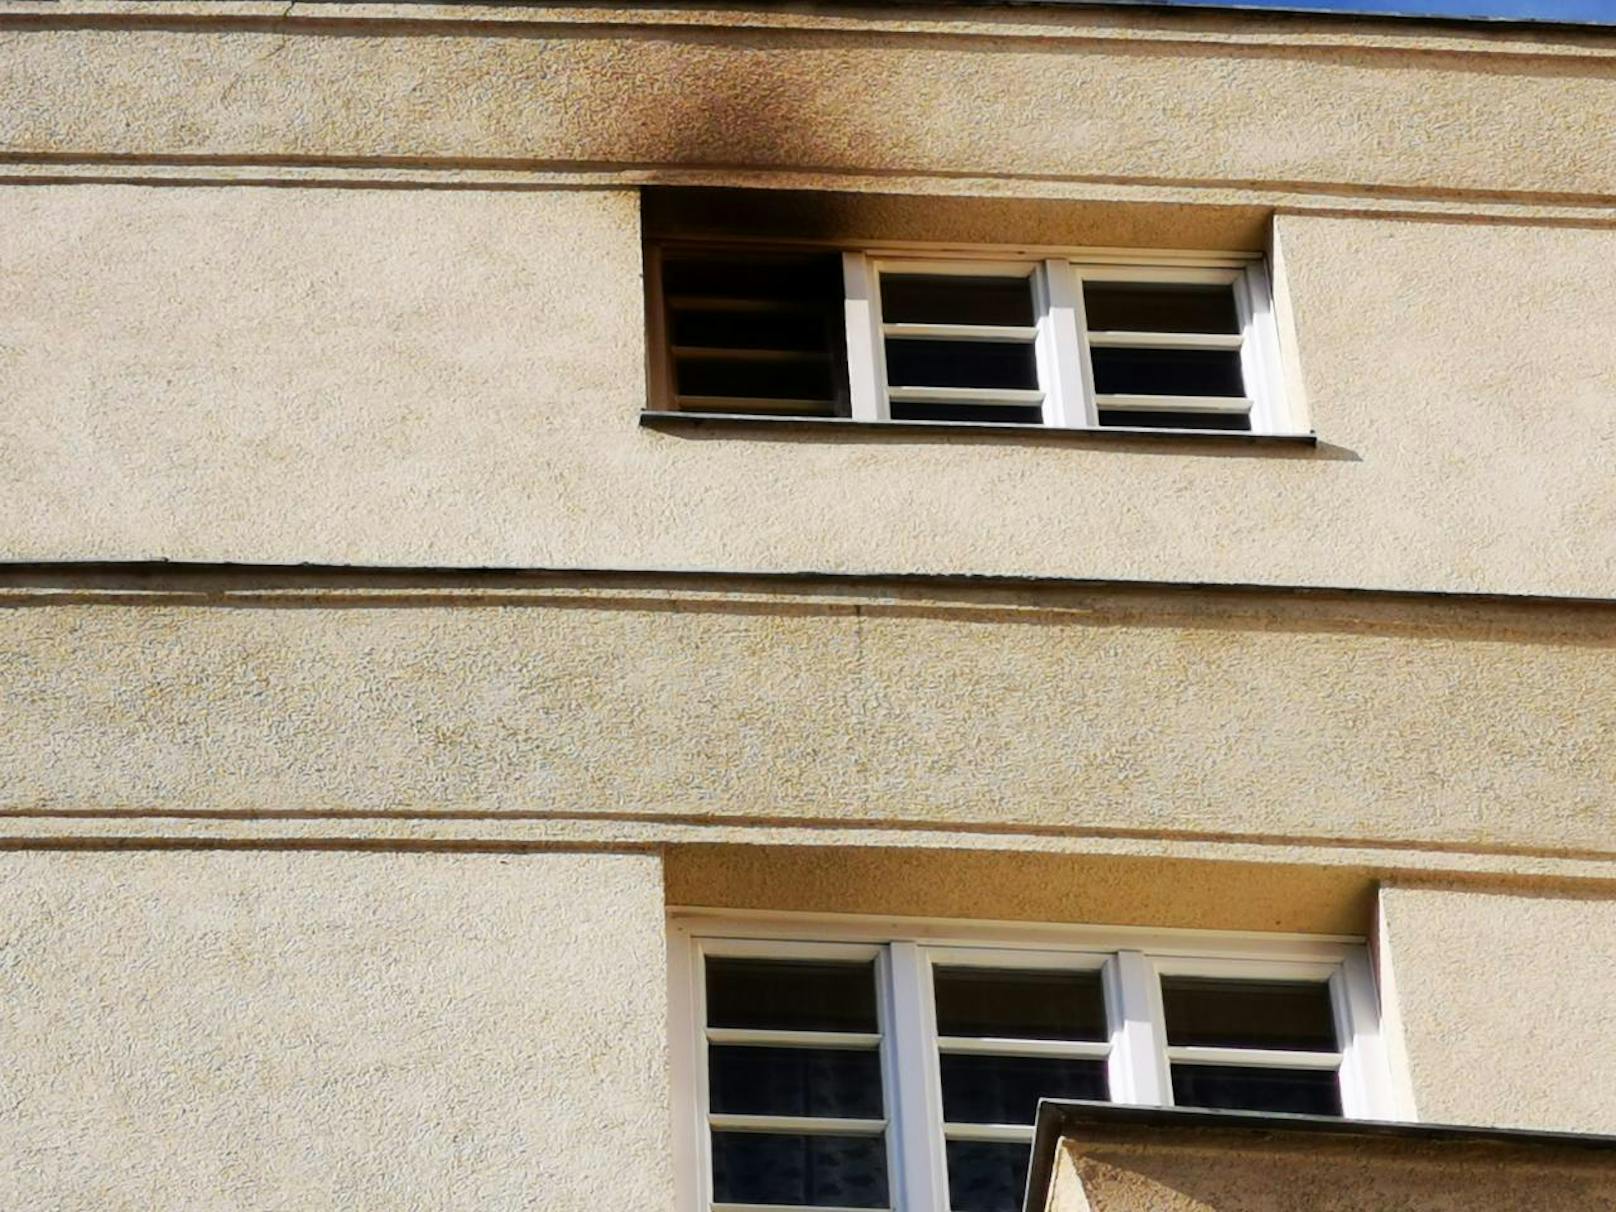 Ein aufmerksamer Bewohner bemerkte in der Nacht auf Samstag um 23 Uhr Brandgeruch in einer der Stiegen der weitläufigen Wohnhausanlage in der Jedleseer Straße in Wien-Floridsdorf und verständigte die Feuerwehr.